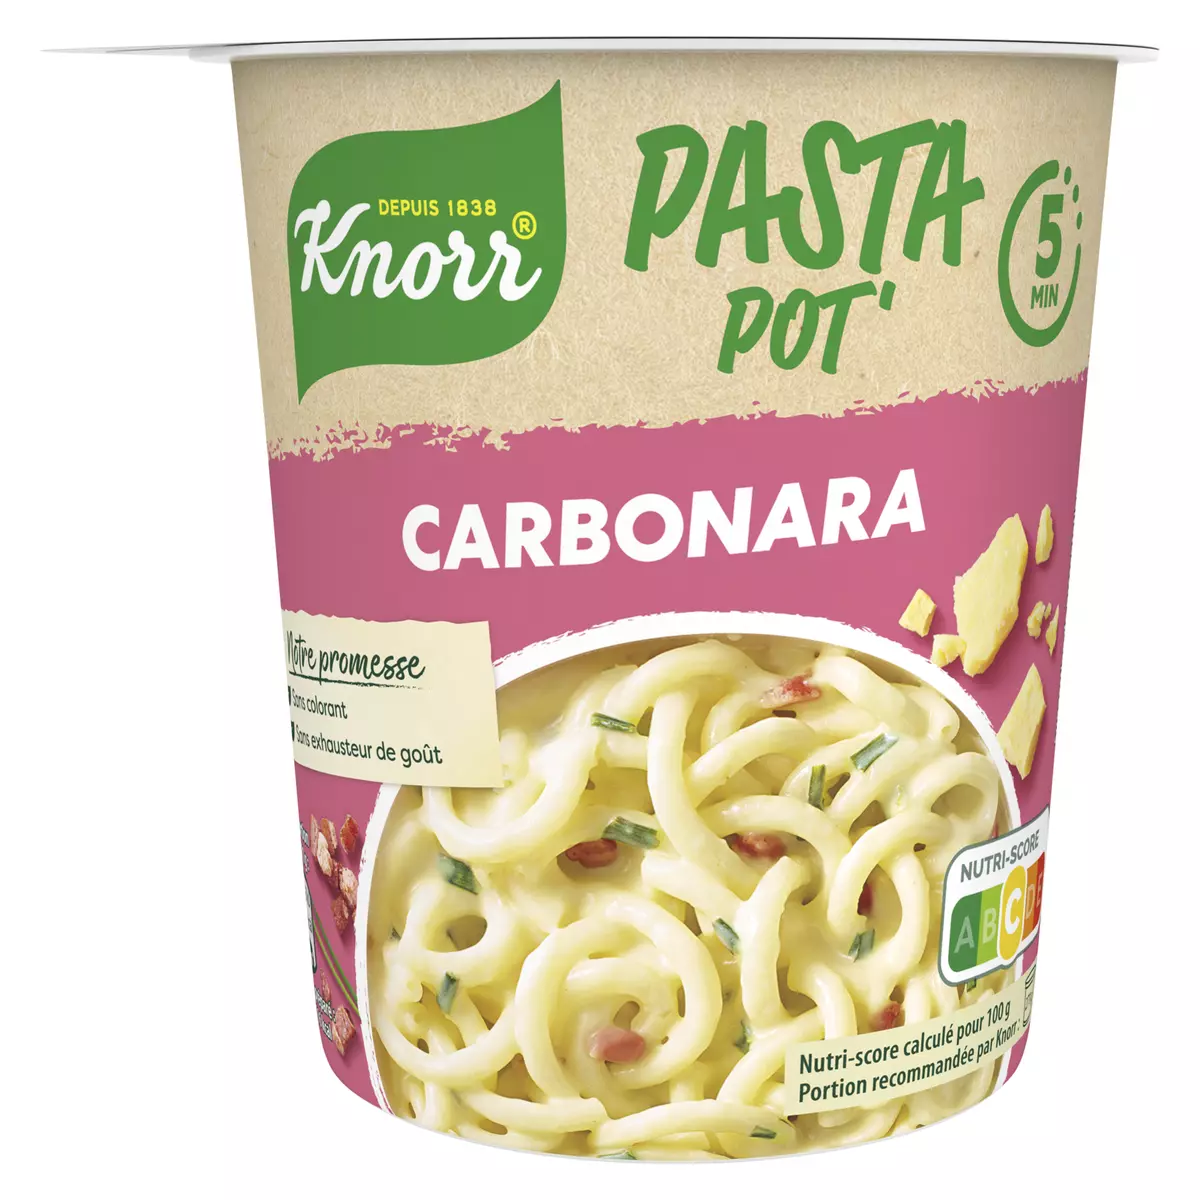 KNORR Cup pâtes carbonara Pasta pot prêt en 5 minutes 1 personne 71g